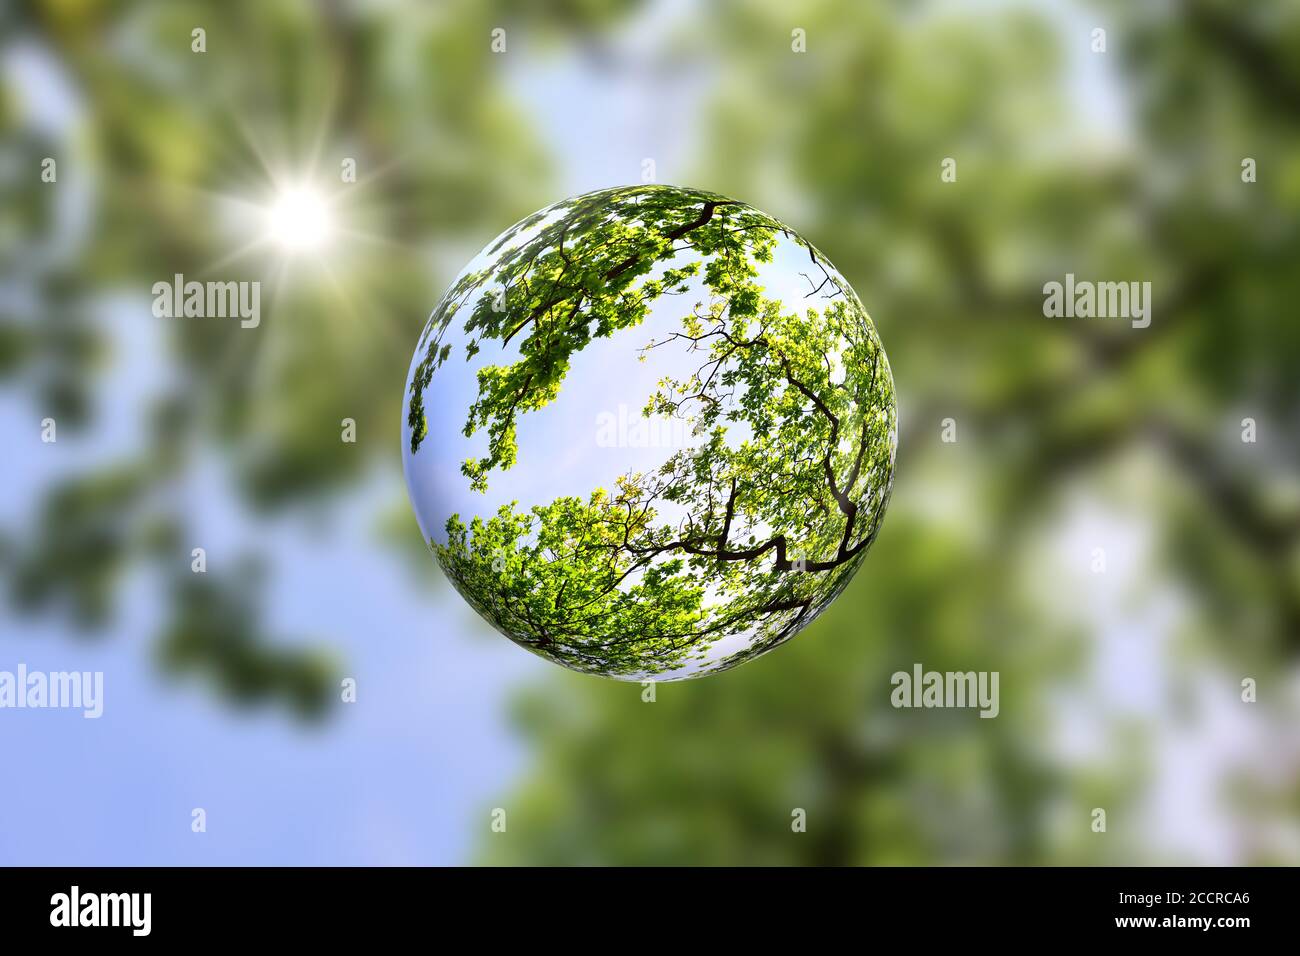 Baldacchino di alberi all'interno di una palla di vetro con il sole che splende attraverso il verde fogliame. Vai verde, pro natura concetto con spazio di copia. Foto Stock